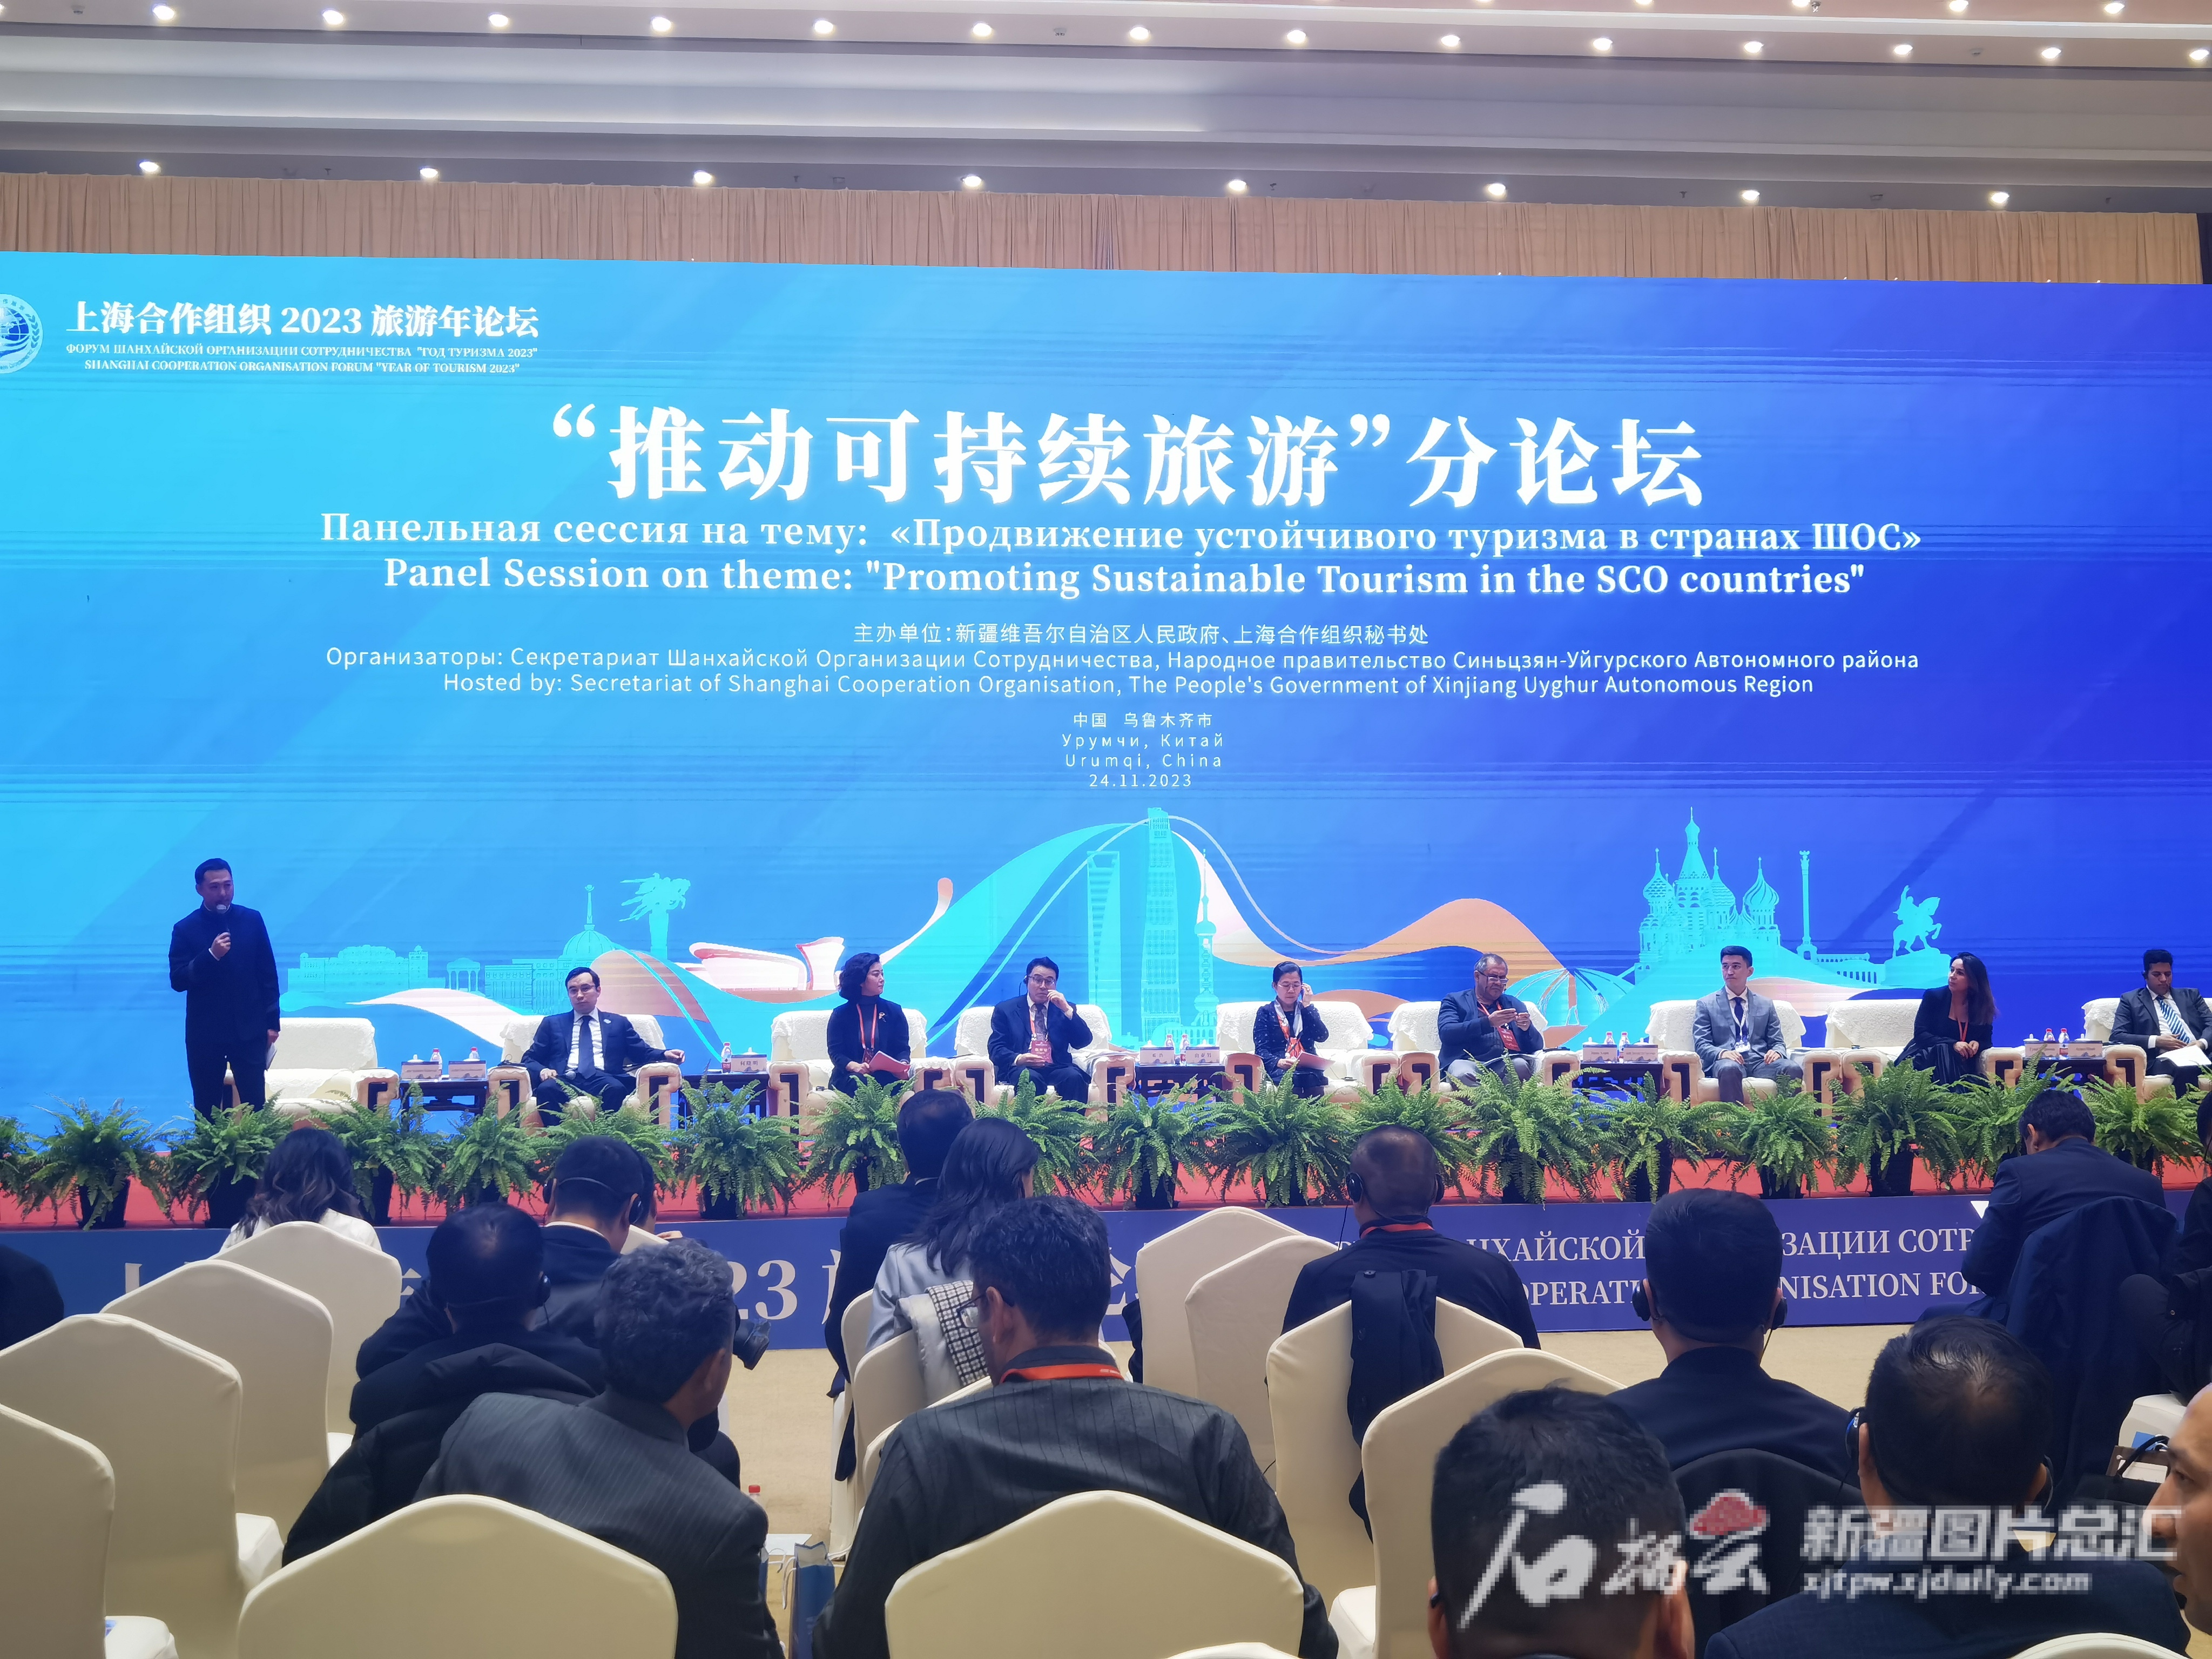 上海合作组织2023旅游年论坛之“推动可持续旅游”分论坛在乌鲁木齐举行